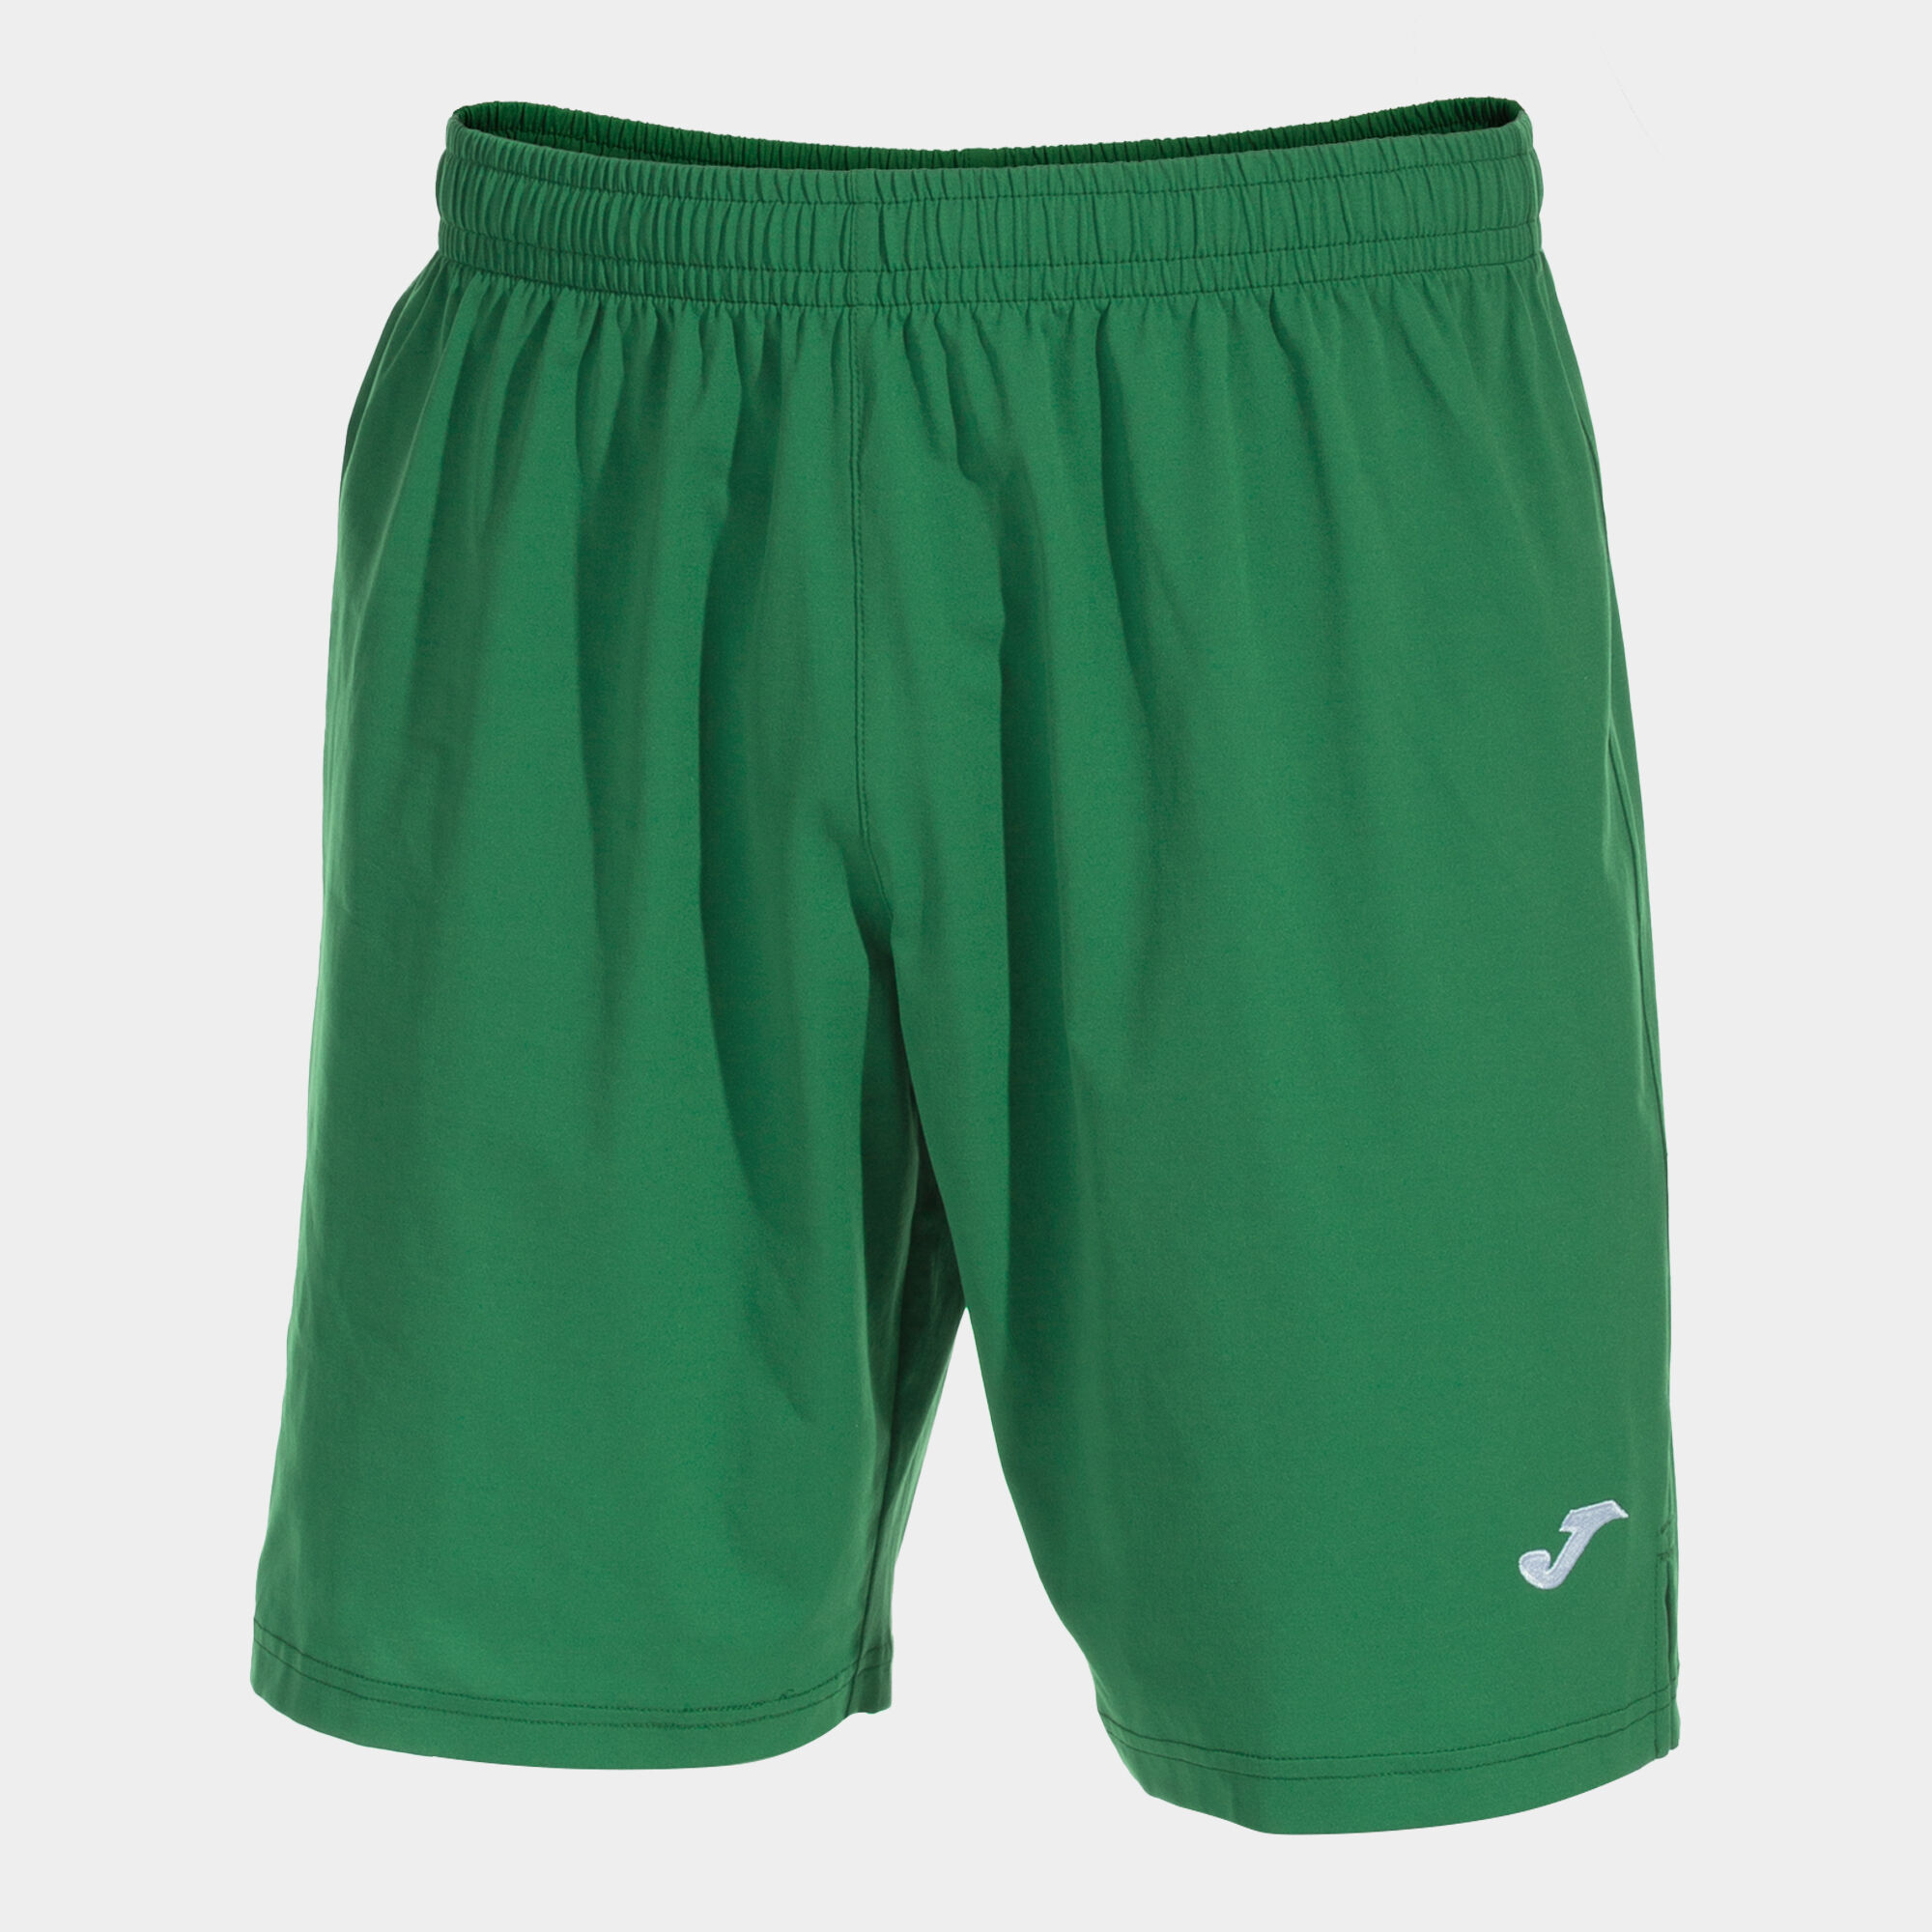 Shorts man Eurocopa III green